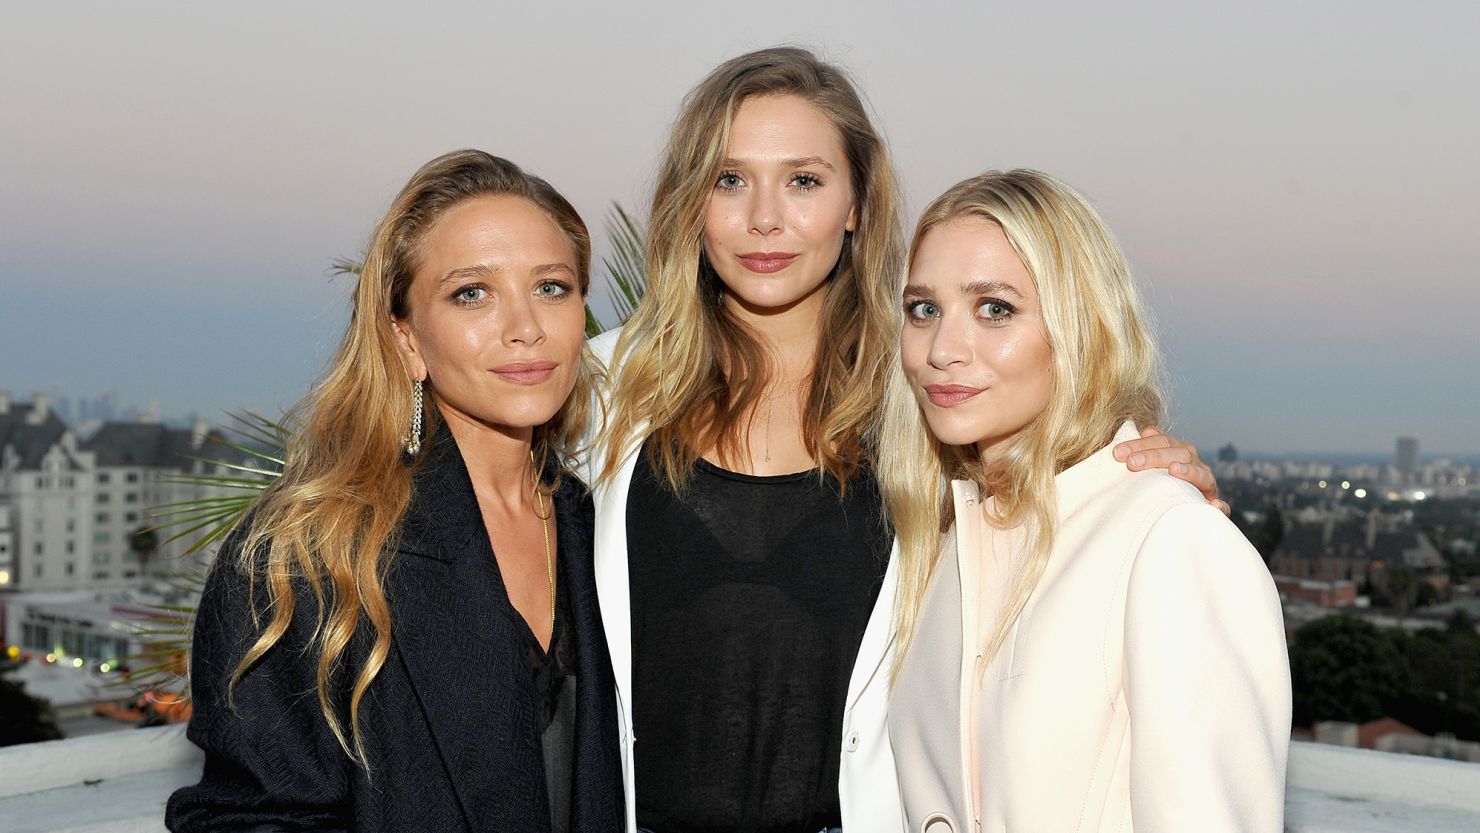 Sisters Mary-Kate Olsen, Elizabeth Olsen and Ashley Olsen in 2016.